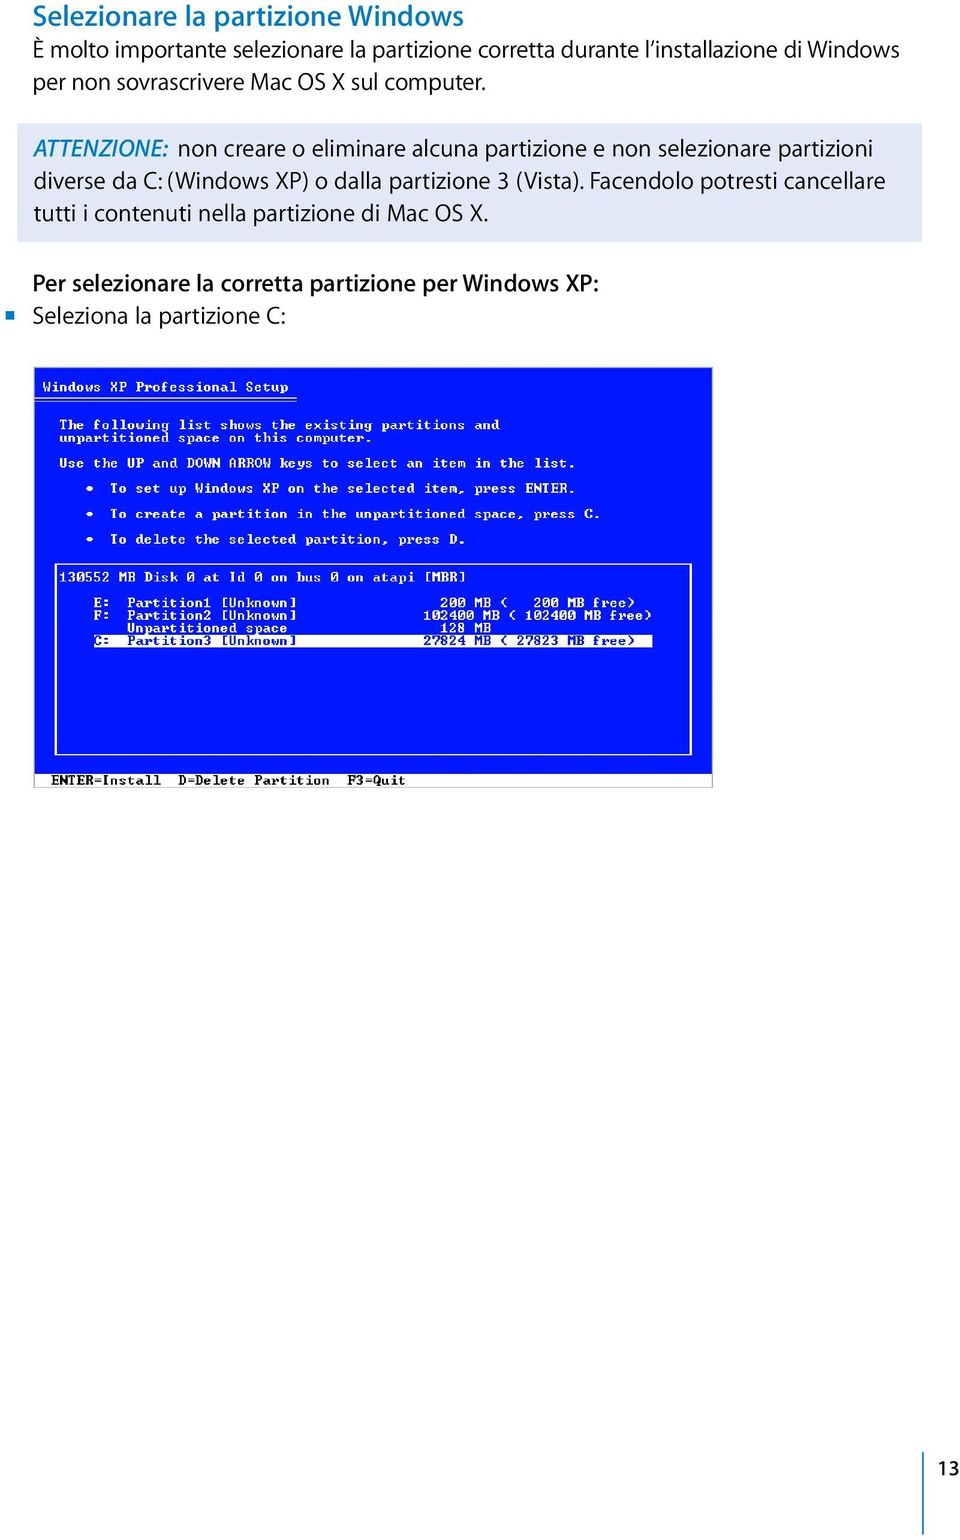 ATTENZIONE: non creare o eliminare alcuna partizione e non selezionare partizioni diverse da C: (Windows XP) o dalla